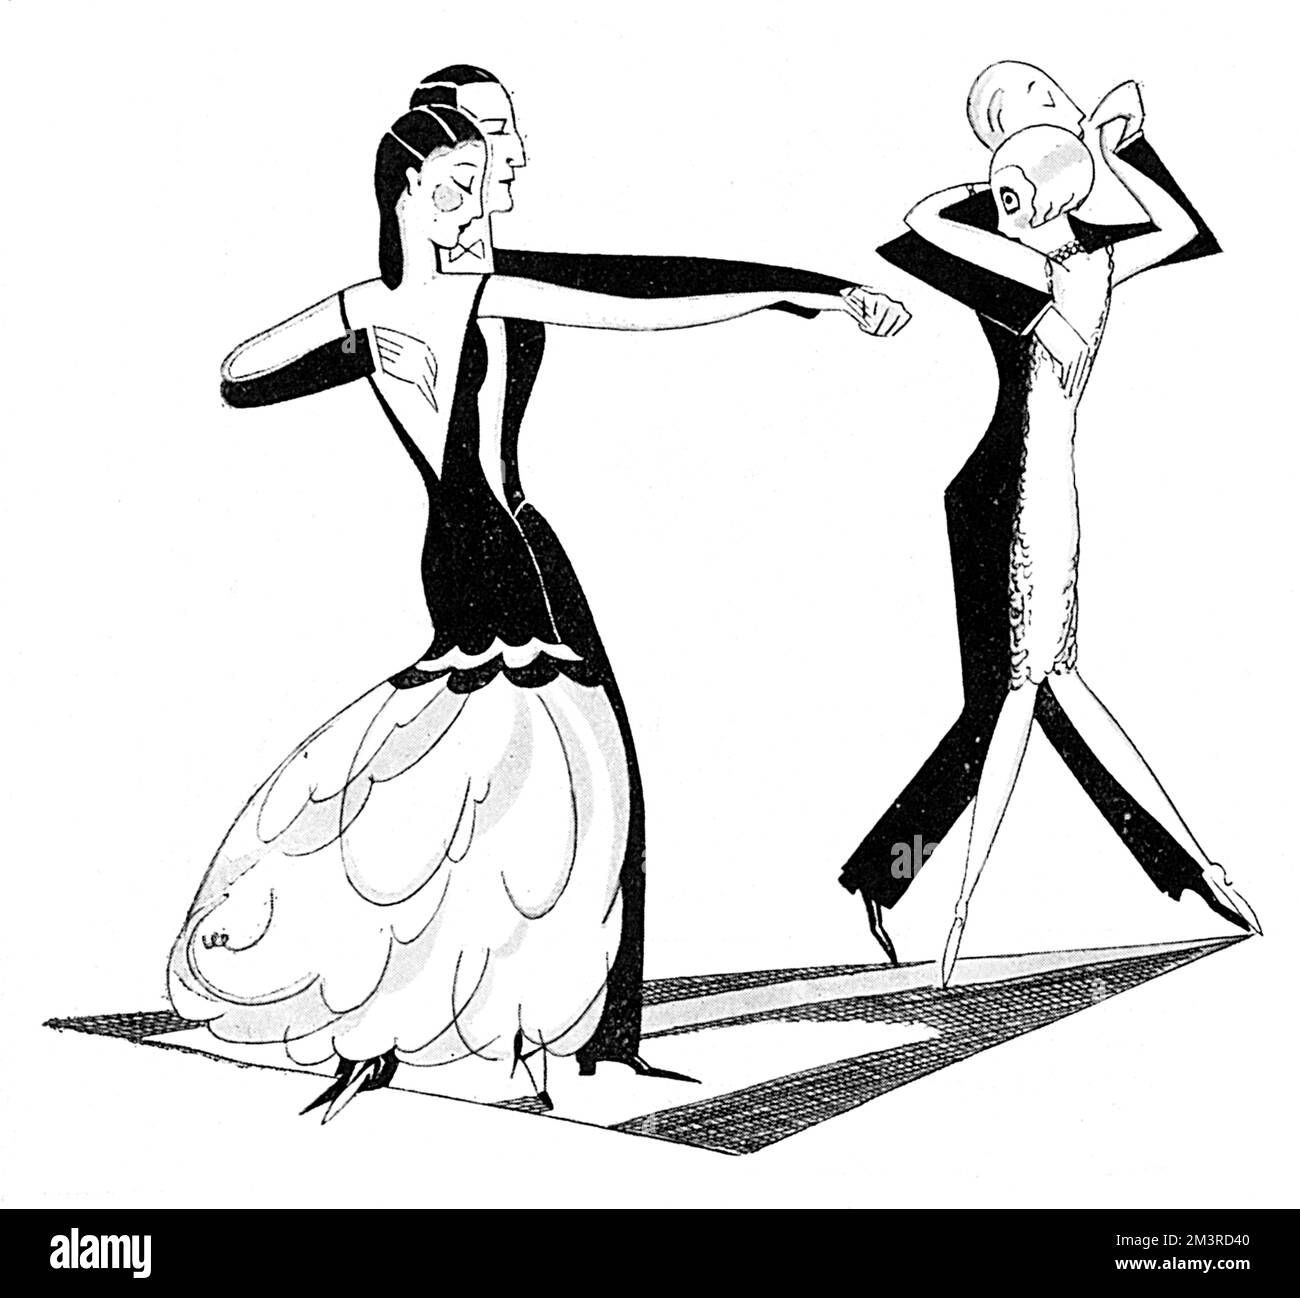 Una donna spagnola che indossa un corpetto nero stretto e una lunga gonna in chiffon rosa dimostra l'autentico tango sulla pista da ballo al Savoy Hotel. Data: 1926 Foto Stock